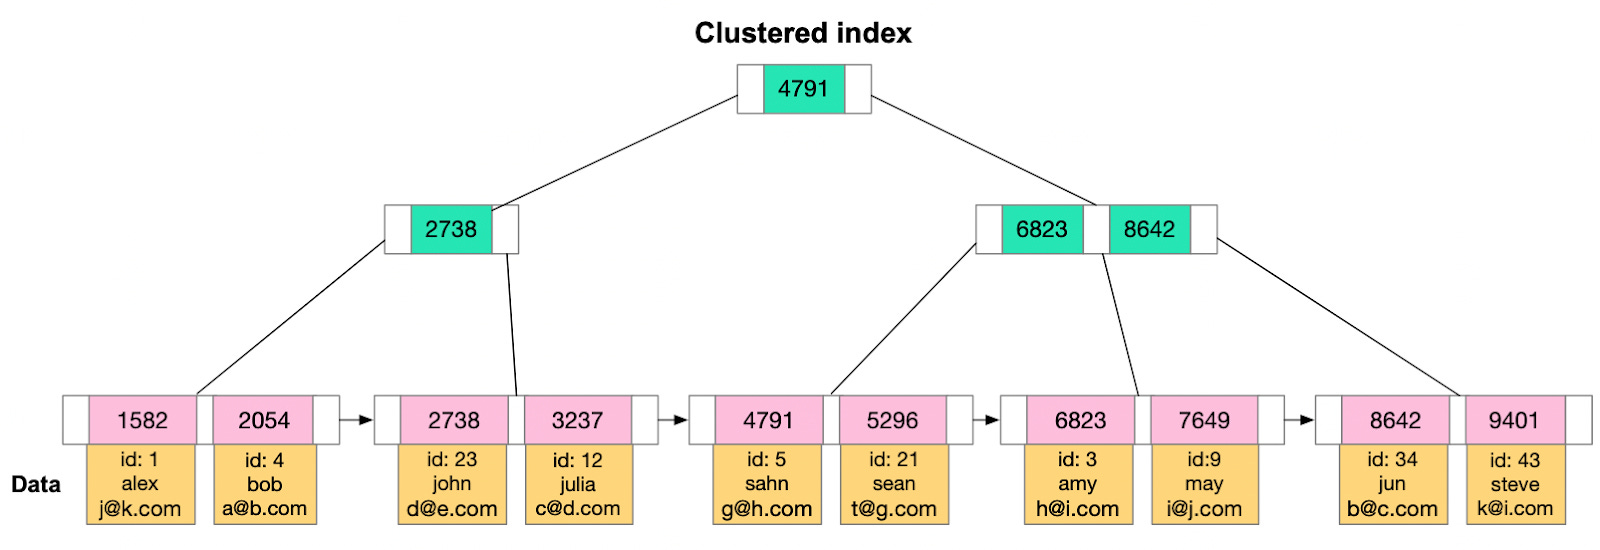 Clustering index